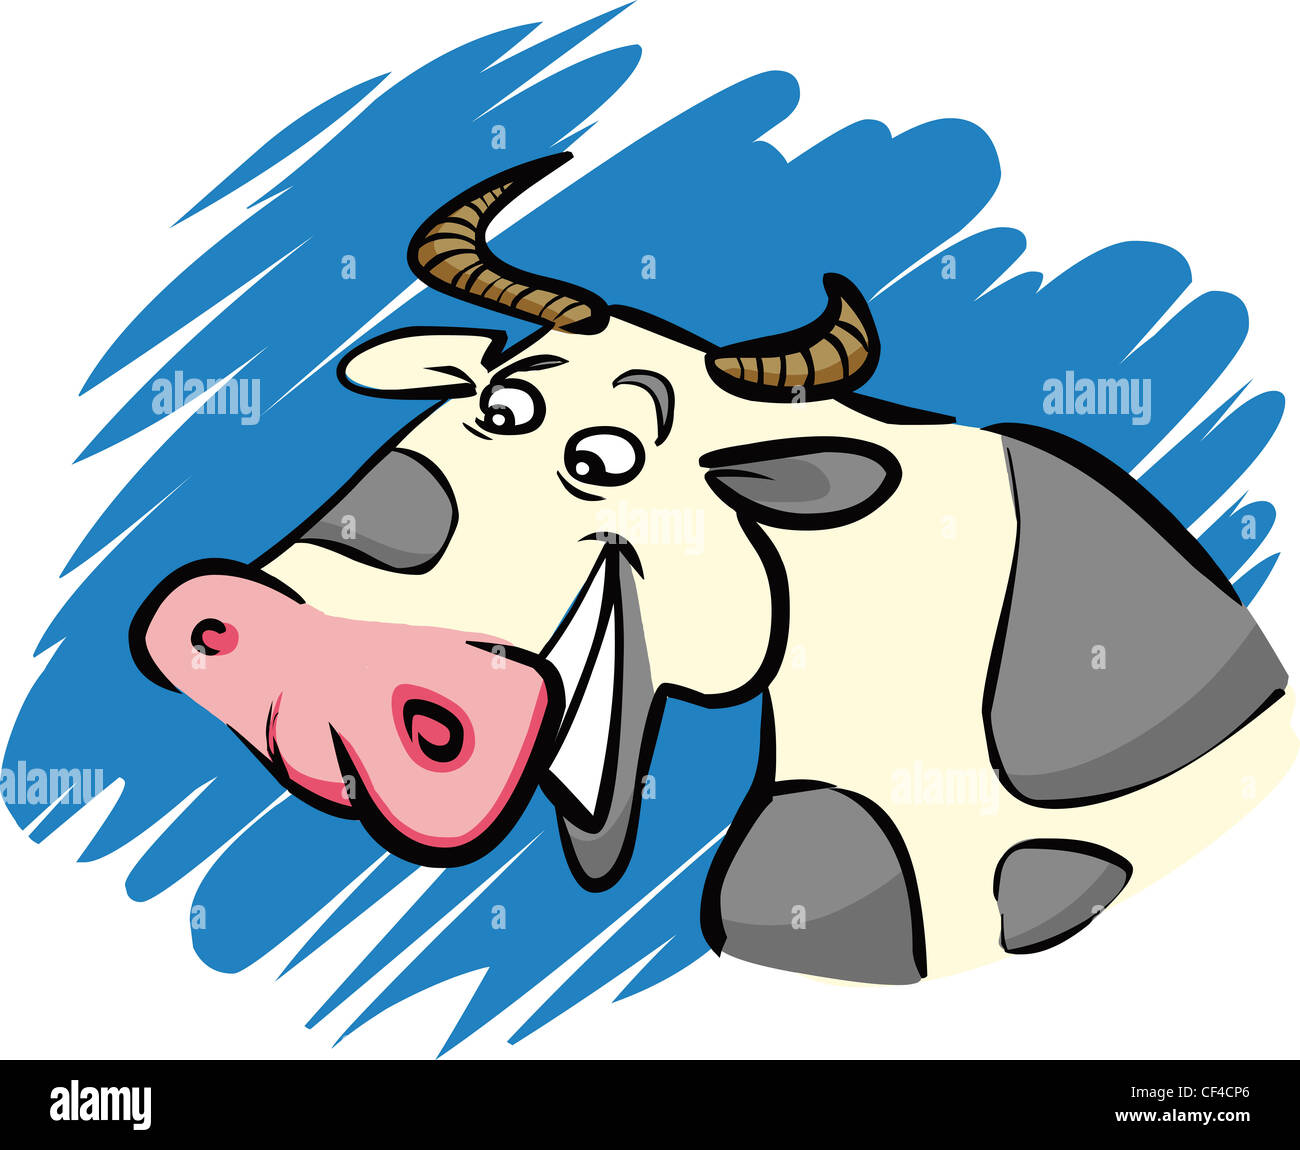 Cartoon illustration humoristique de vache funny farm Banque D'Images